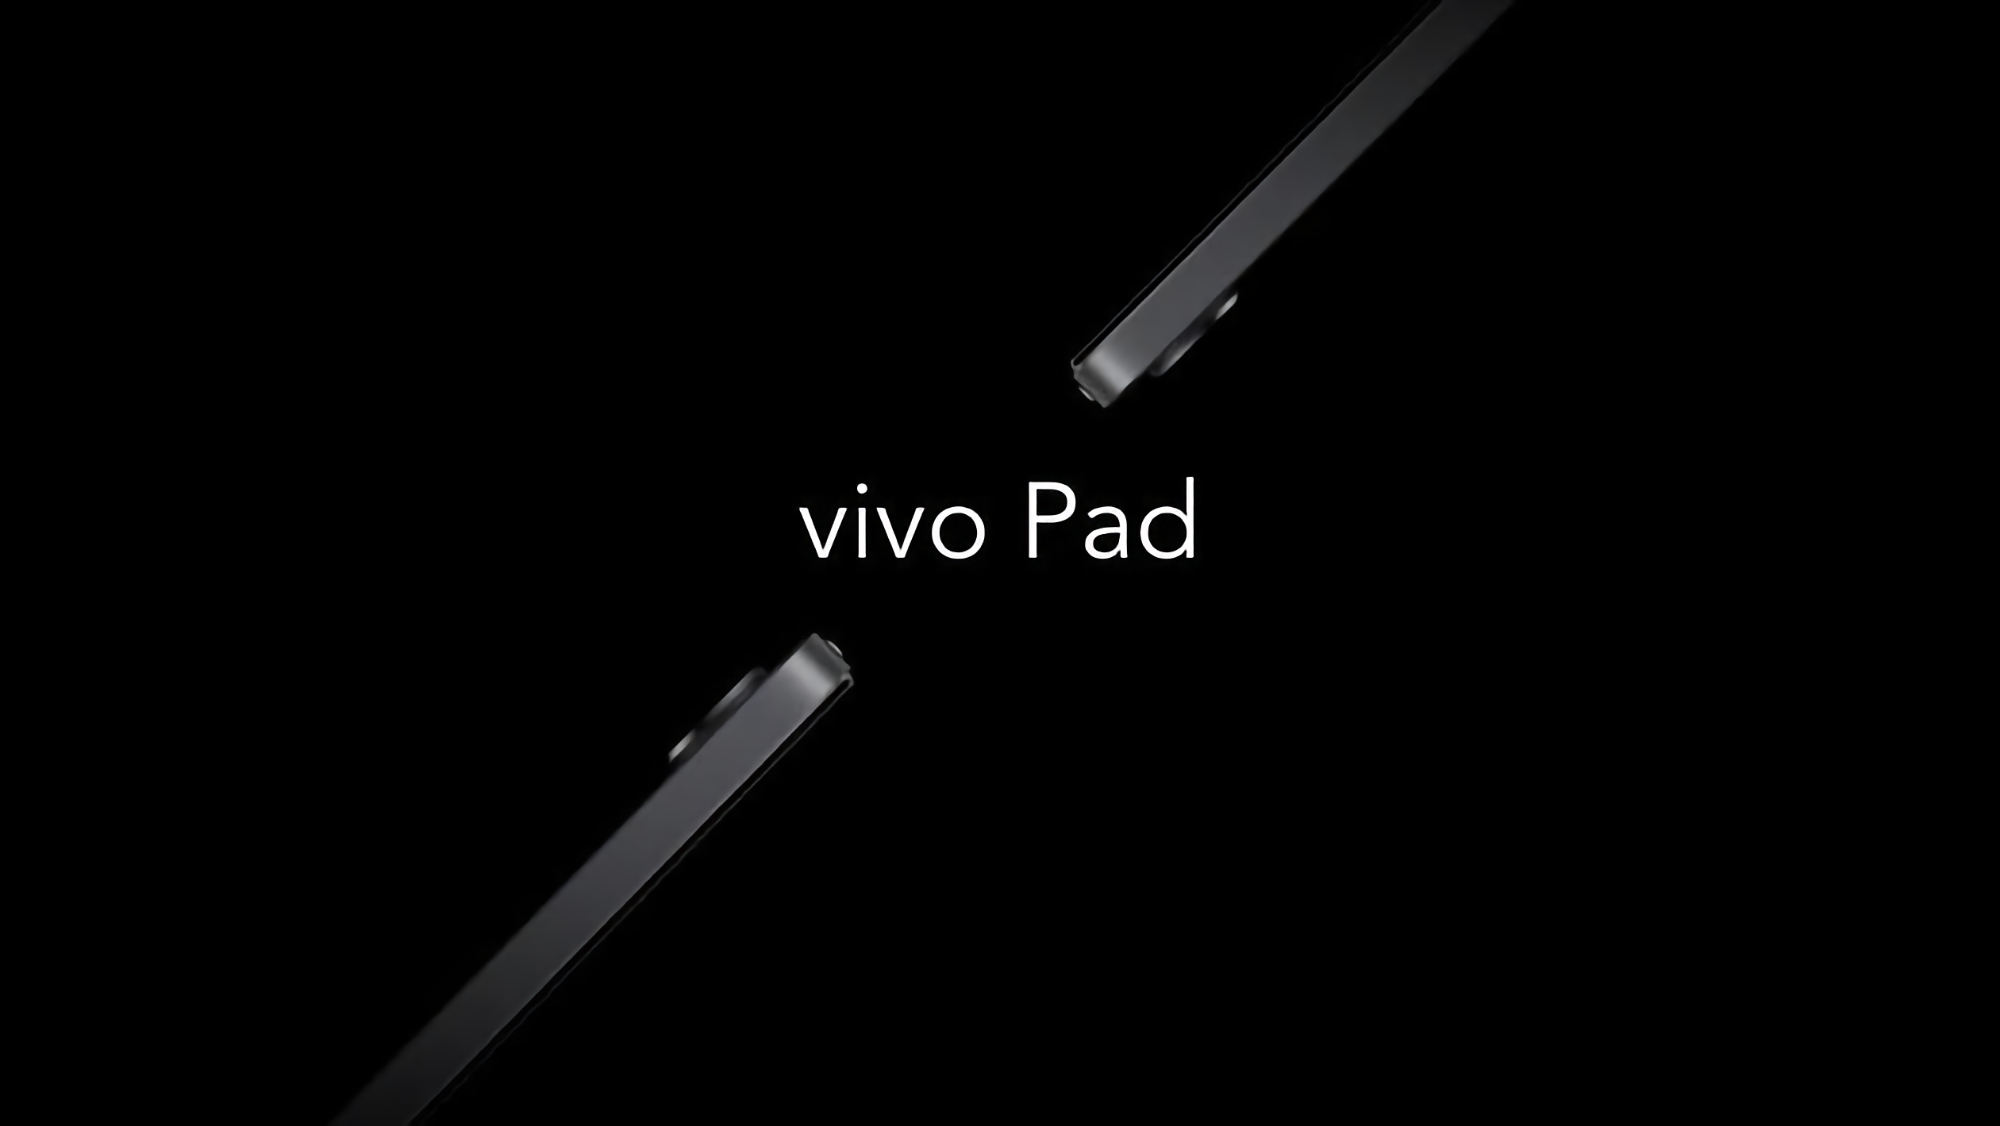 Ekran 120 Hz, układ Snapdragon 870 i szybkie ładowanie 44 W: dane techniczne pierwszego tabletu Vivo wyciekają online